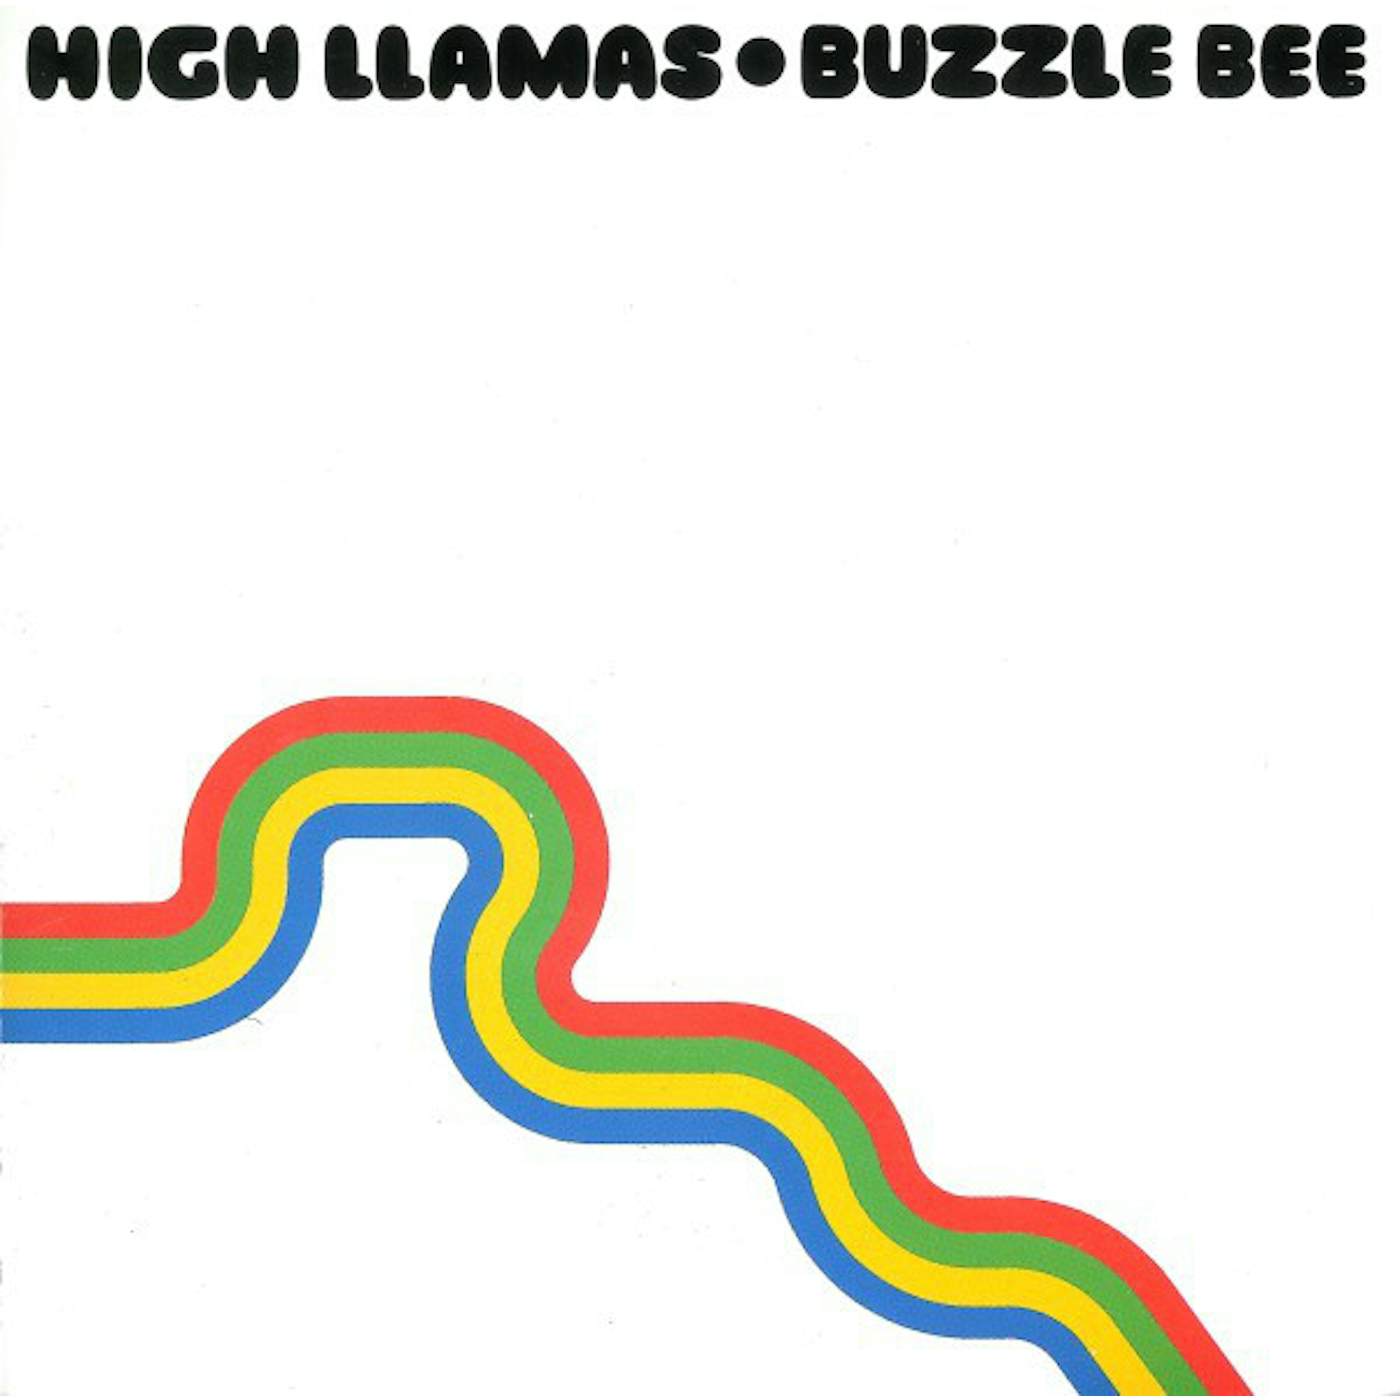 High Llamas Buzzle Bee Vinyl Record